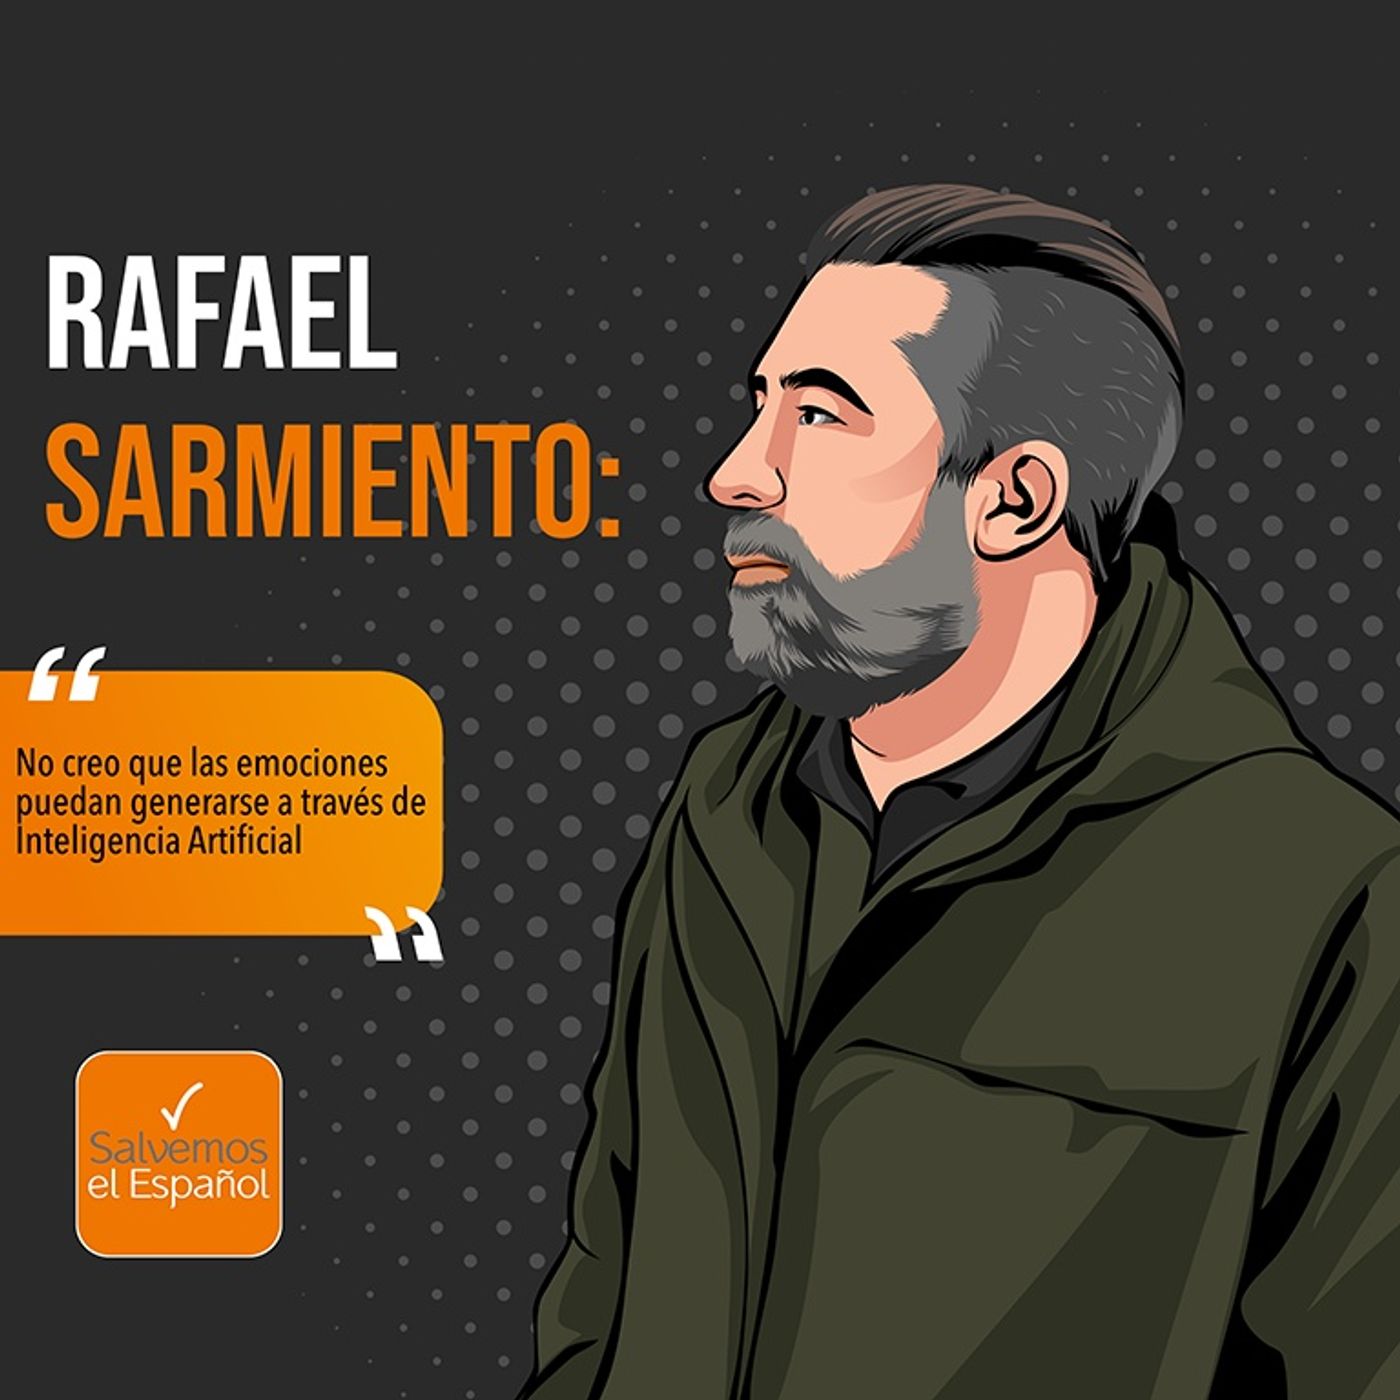 Rafael Sarmiento: “No creo que las emociones puedan generarse a través de Inteligencia Artificial” - T03E06